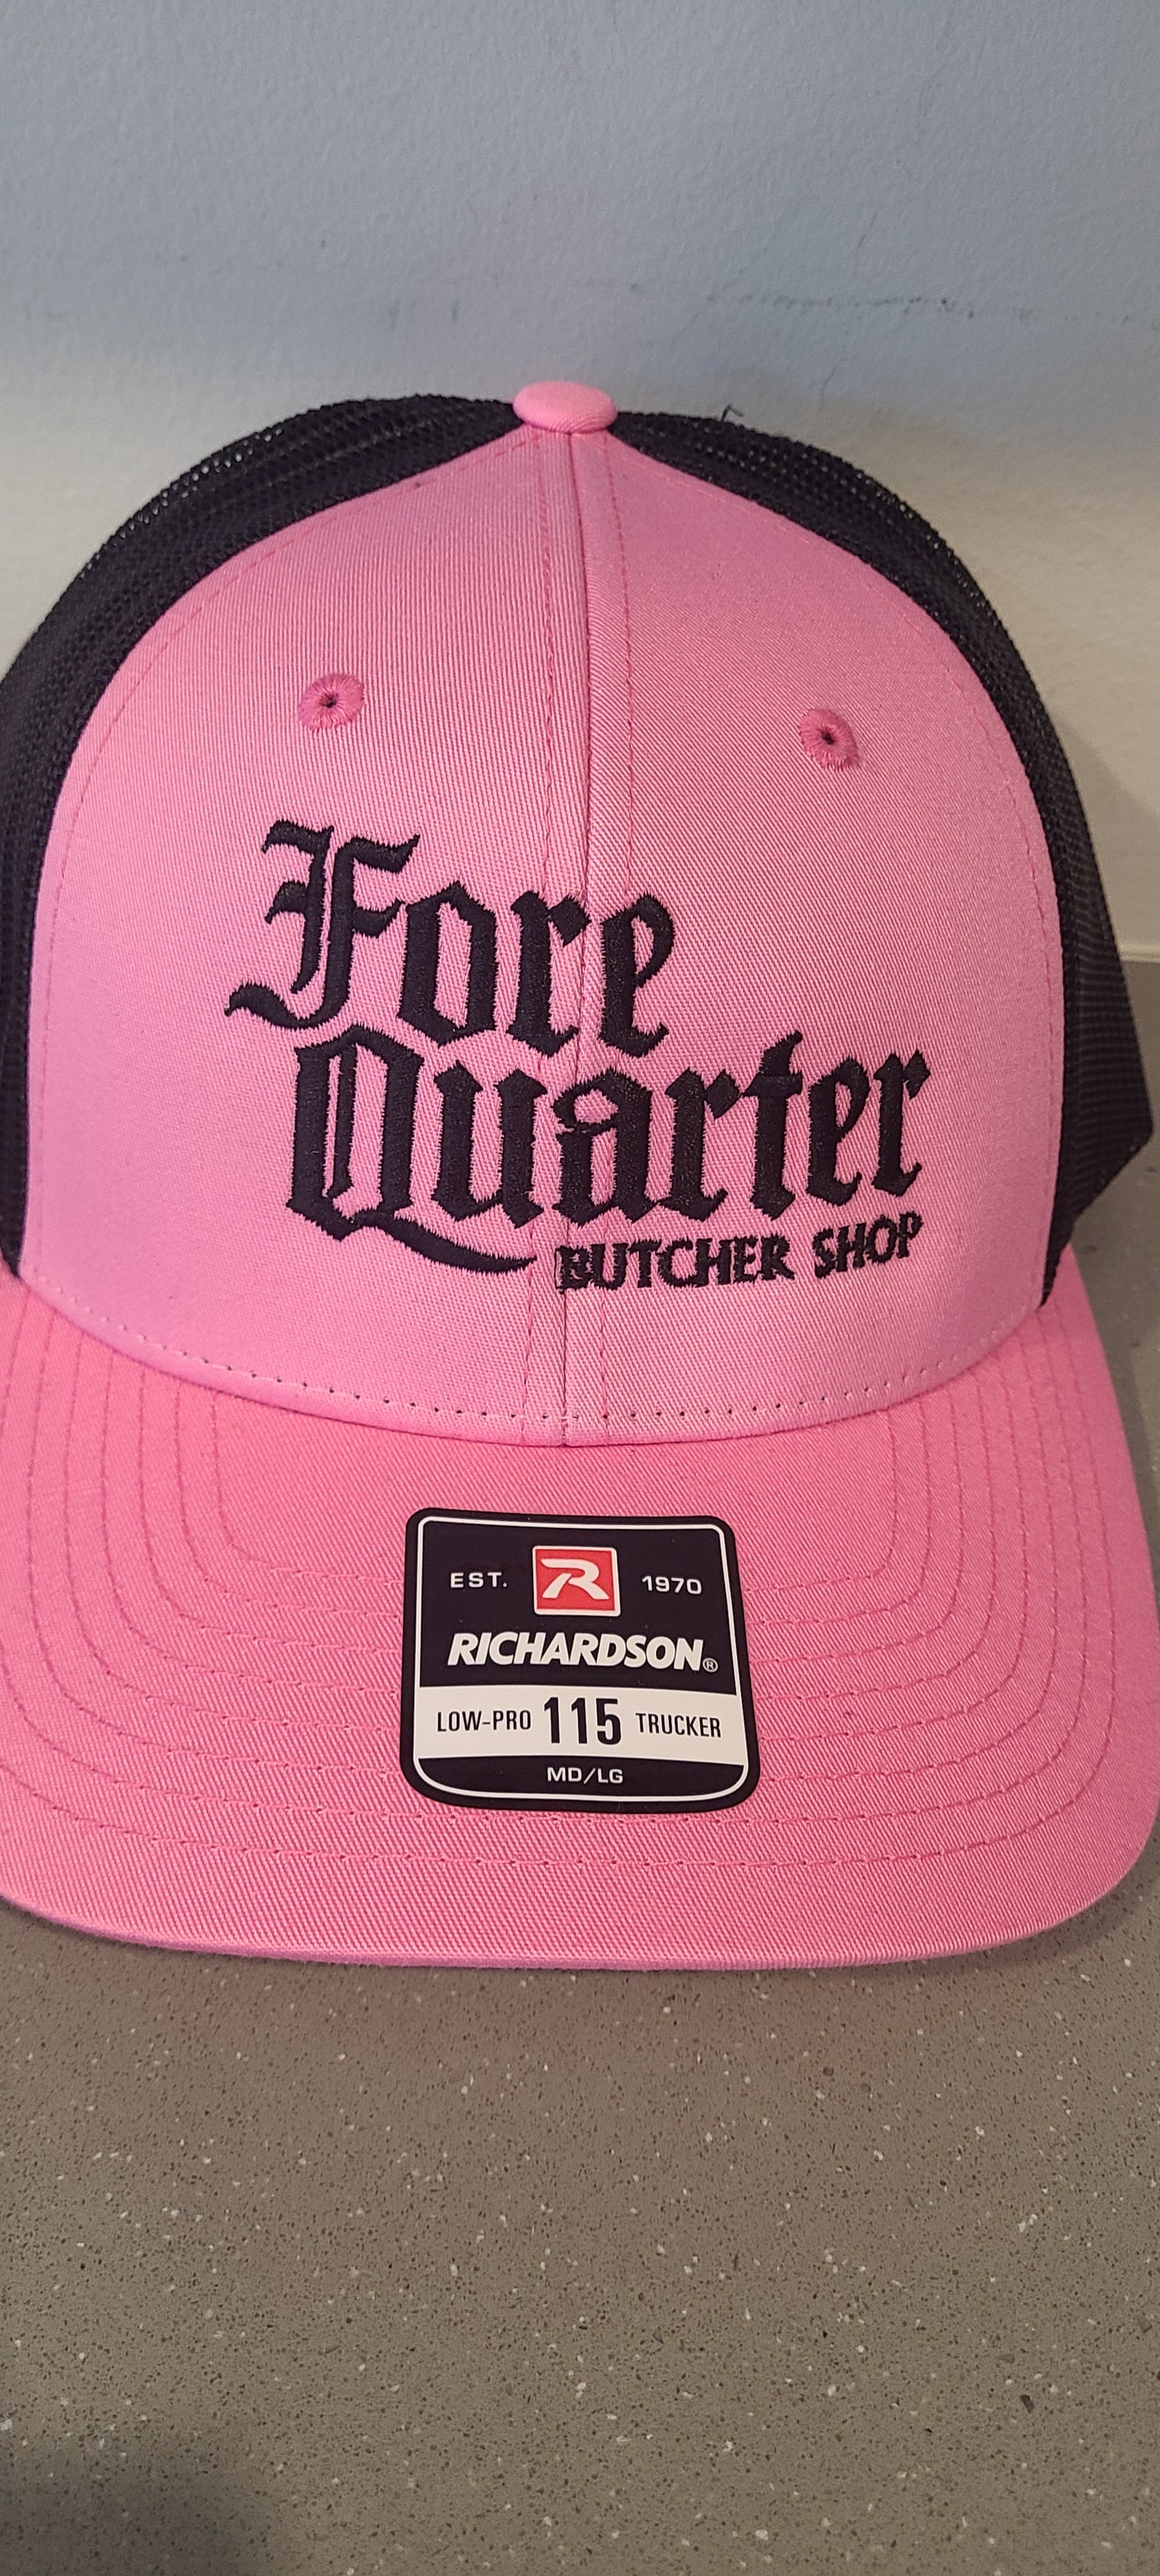 "Butcher Shop" Snap back